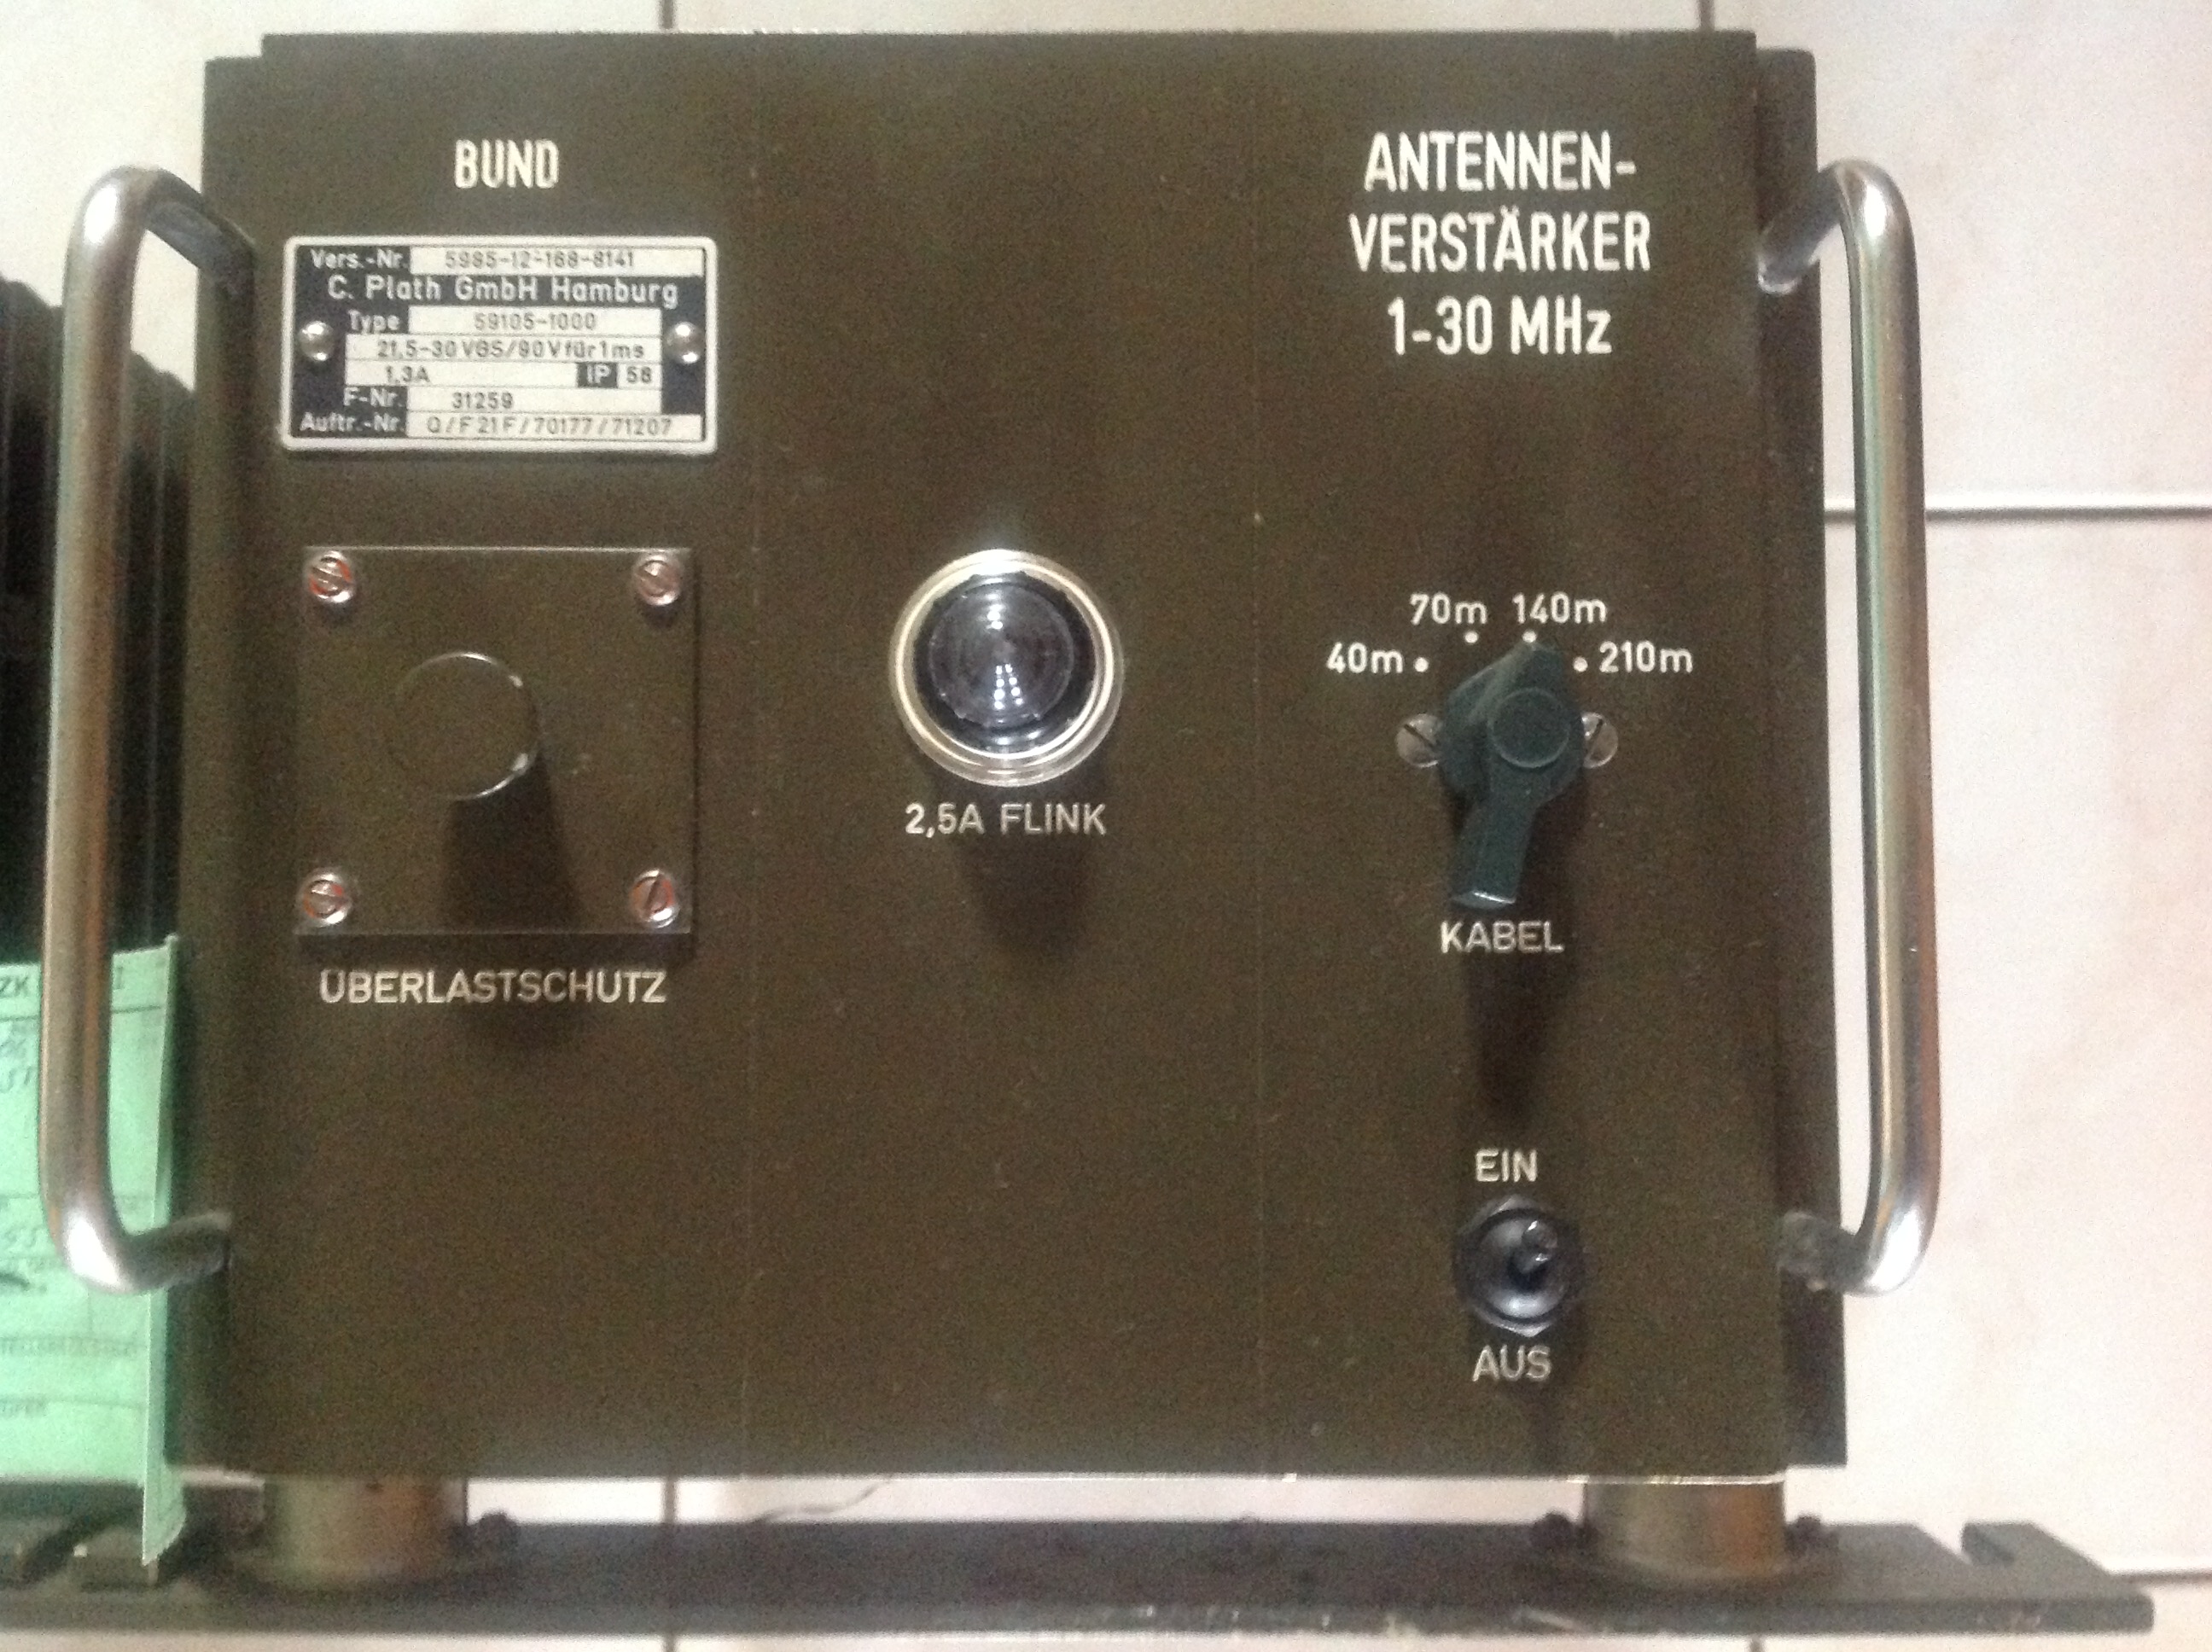 Antennenverstärkeranlage AVS 59105